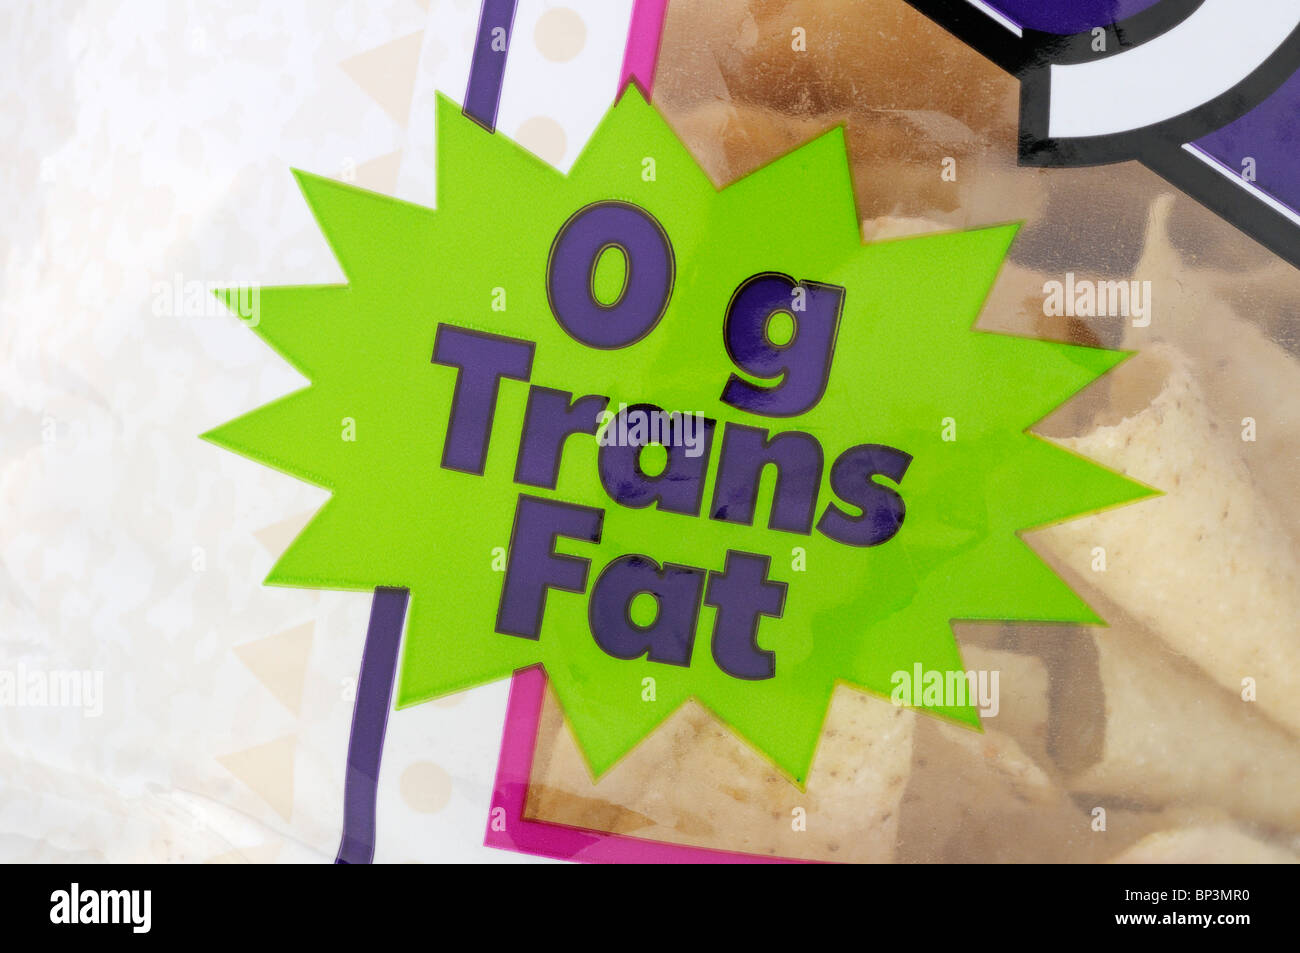 Verpackungsetikett besagt, dass die beiliegenden Tortillachips keine Trans-Fettsäuren enthalten. Stockfoto